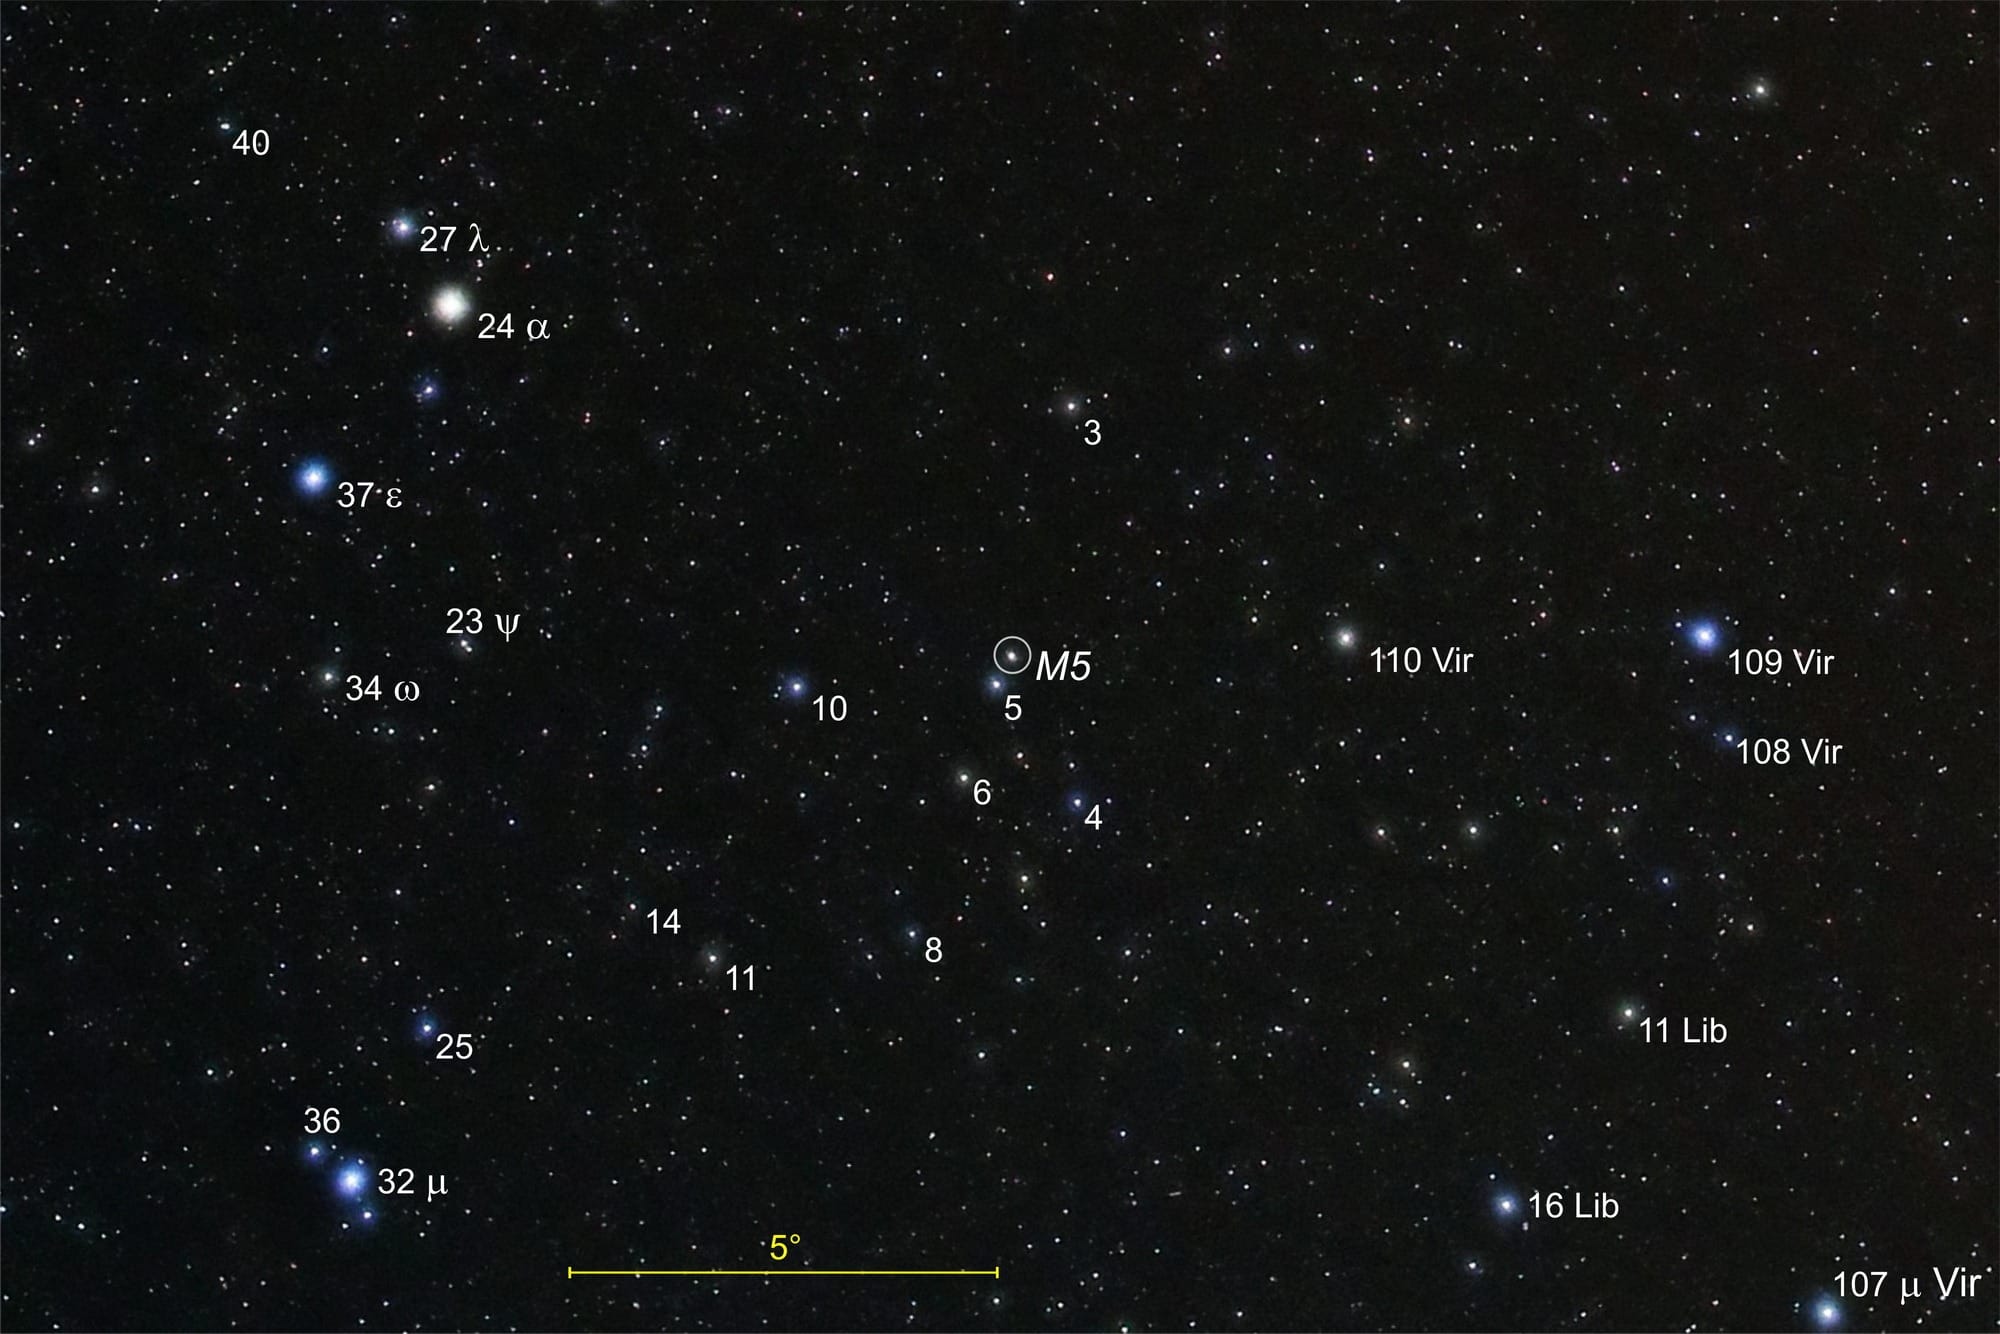 Der Kugelsternhaufen M5 in der Bildmitte erscheint in der Weitfeldfotografie wie ein Stern. Hellere Sterne in seiner Umgebung sind mit ihren Katalognummern beschriftet.